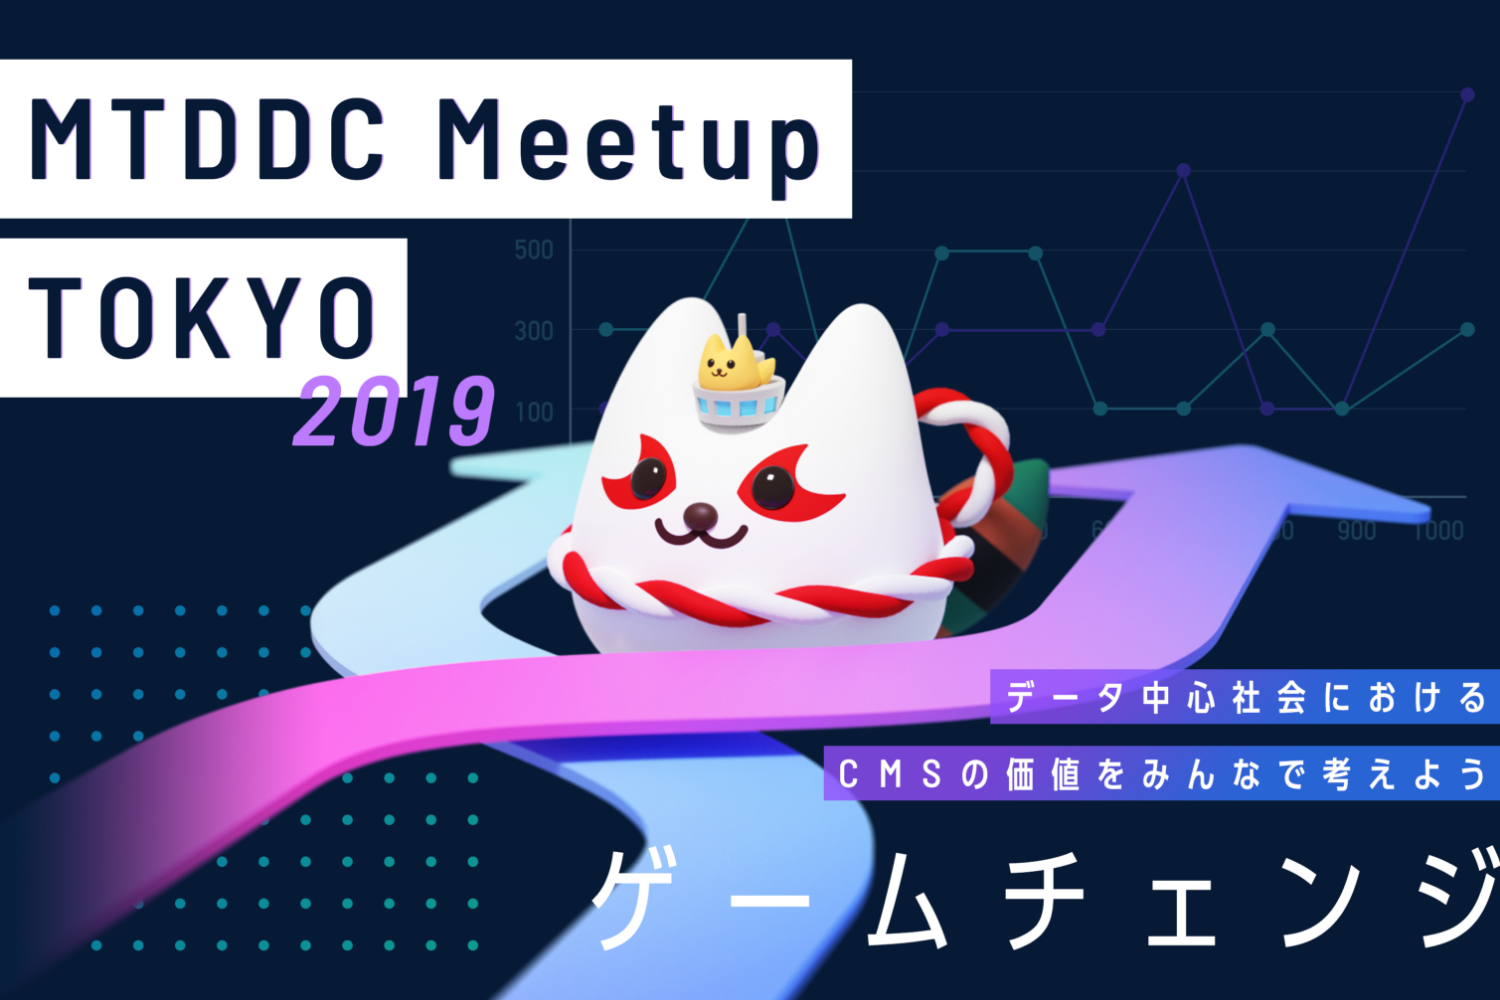 MTDDC Meetup TOKYO 2019 今年のテーマはゲームチェンジ